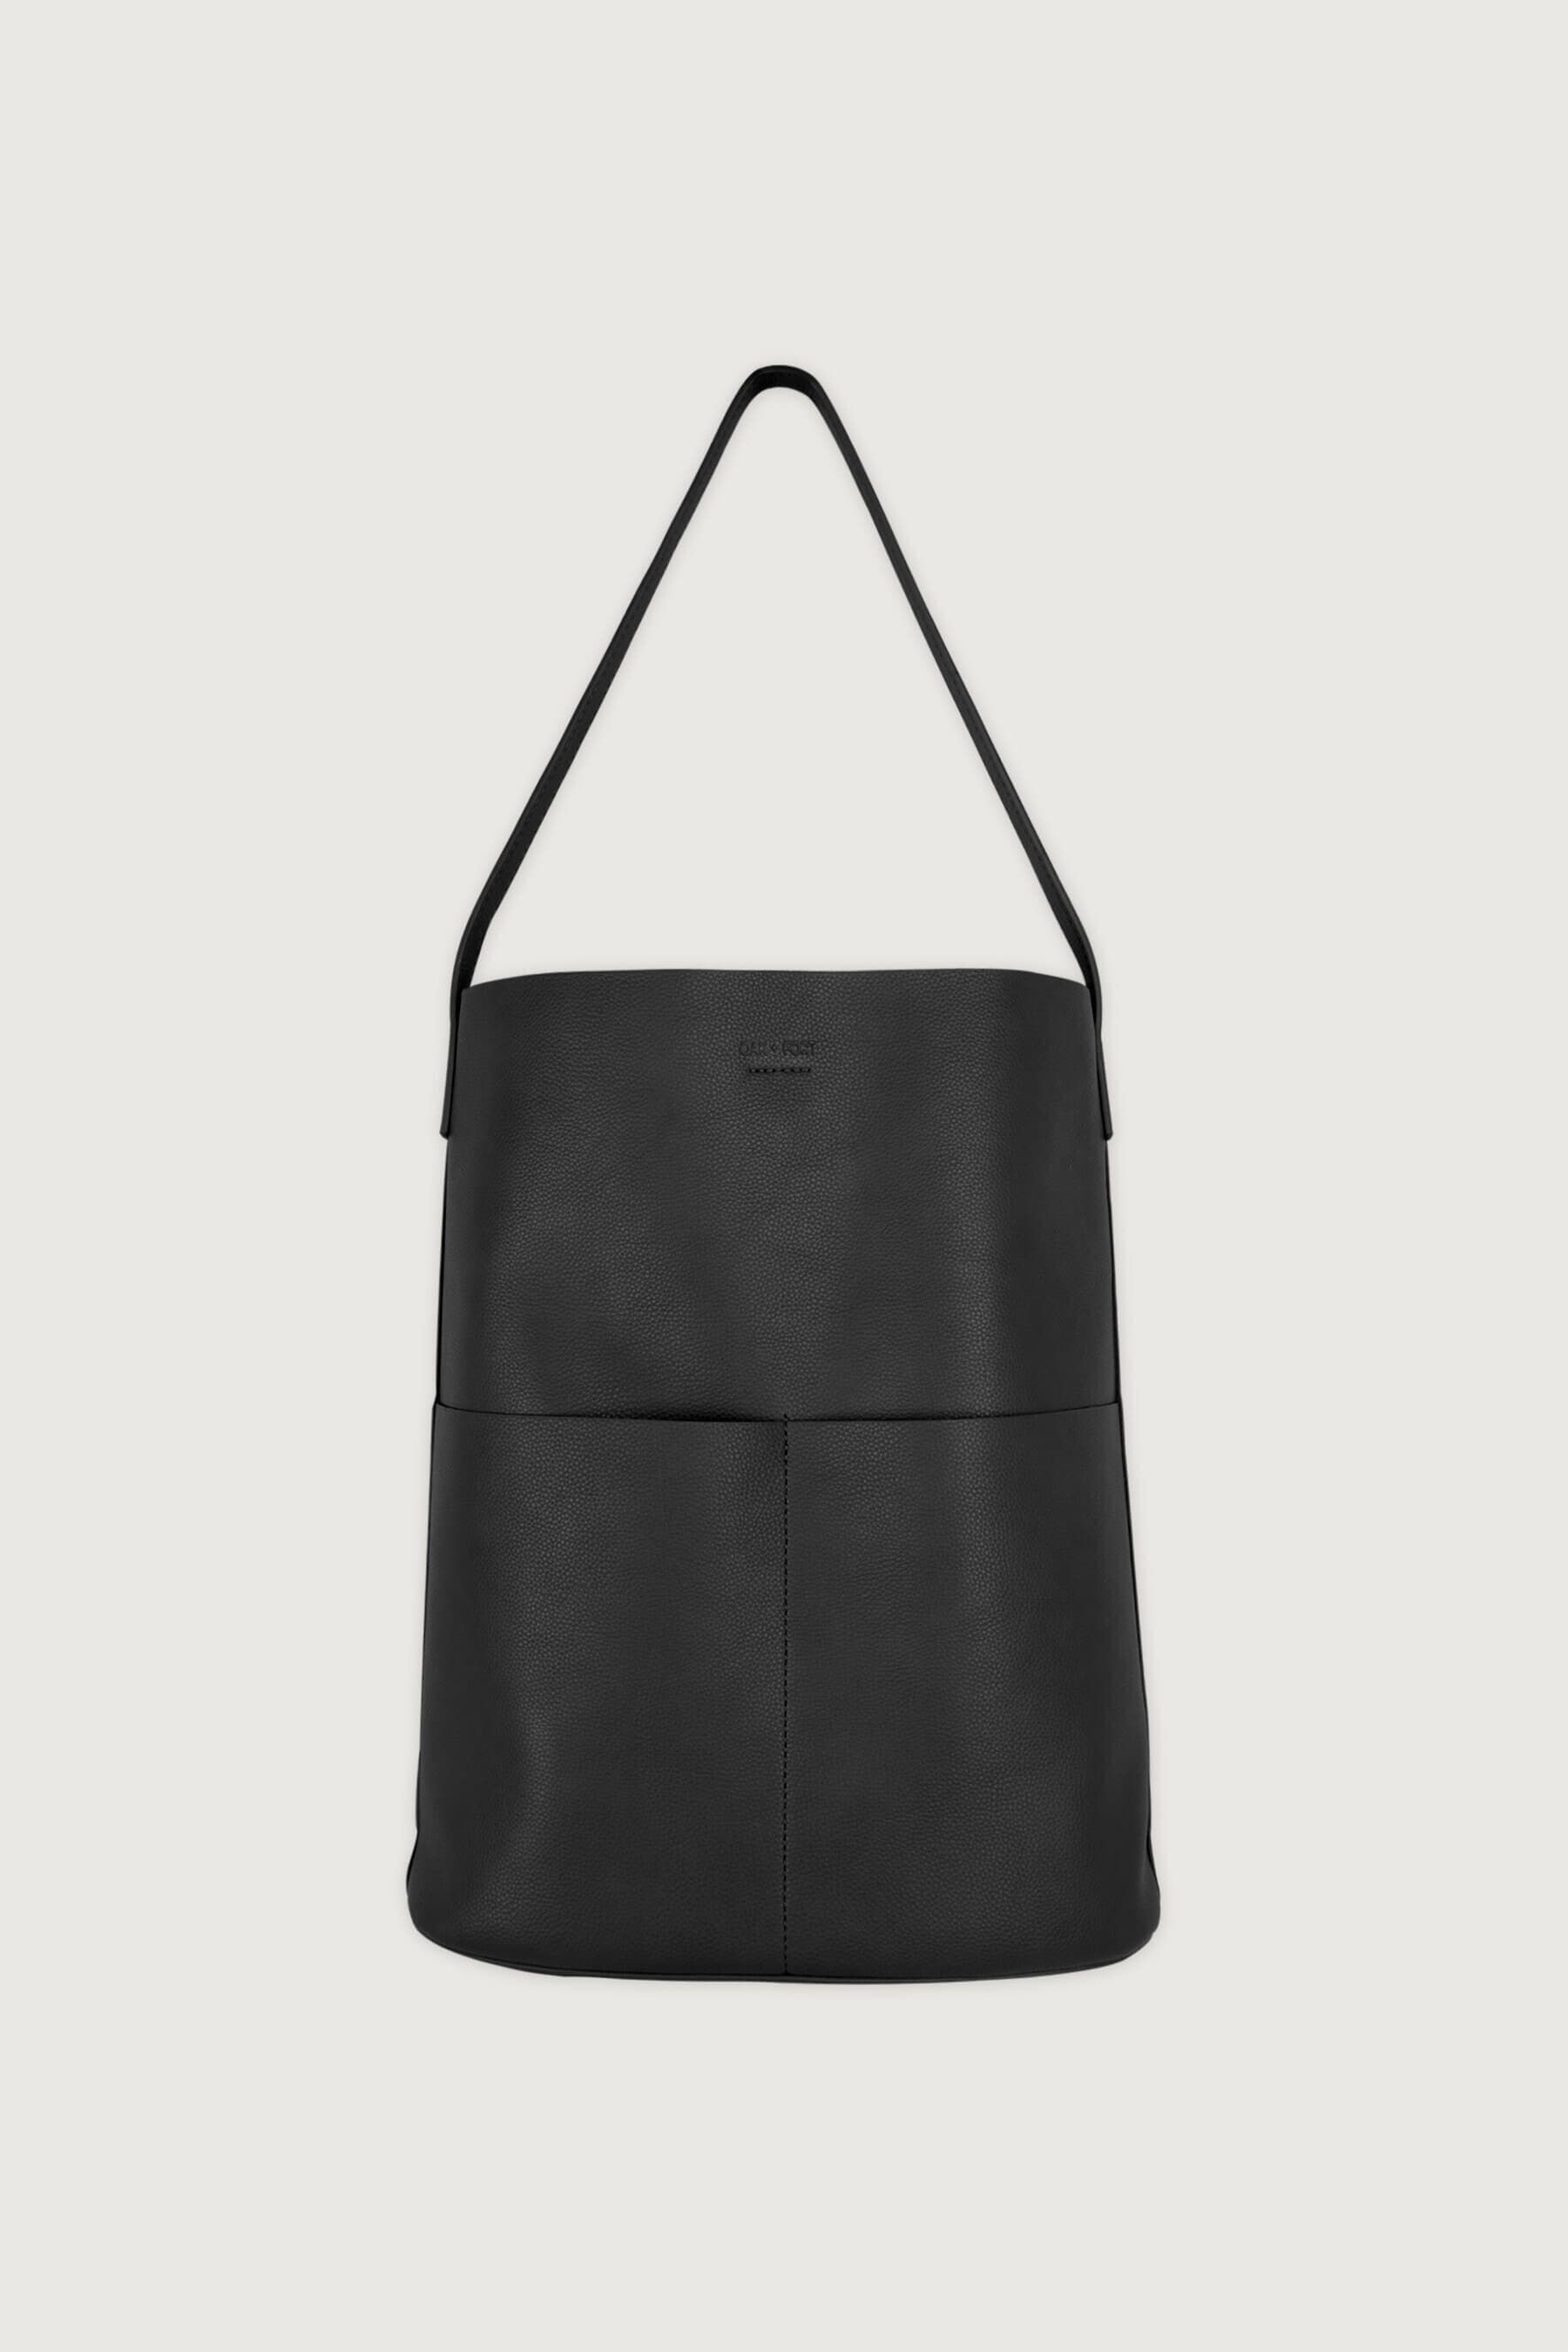 Modern Lightweight Black Cross Body Everyday Satchel Bag for Business Casual Sport Hiking Genuine Leather Bag Mens Shoulder Bag